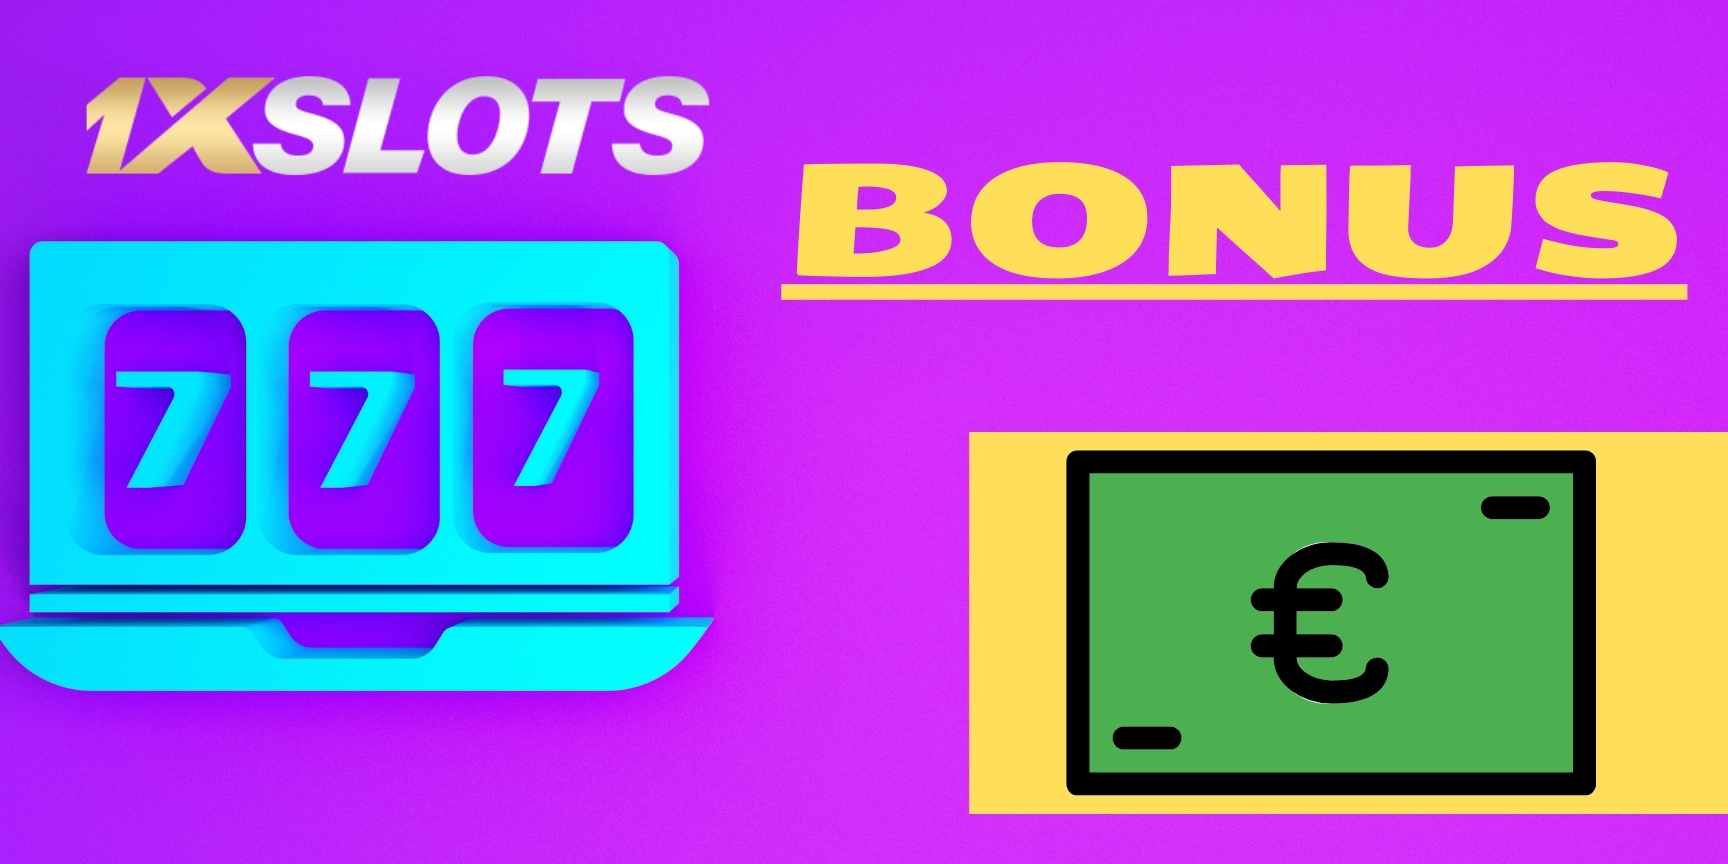 1xslots bonus